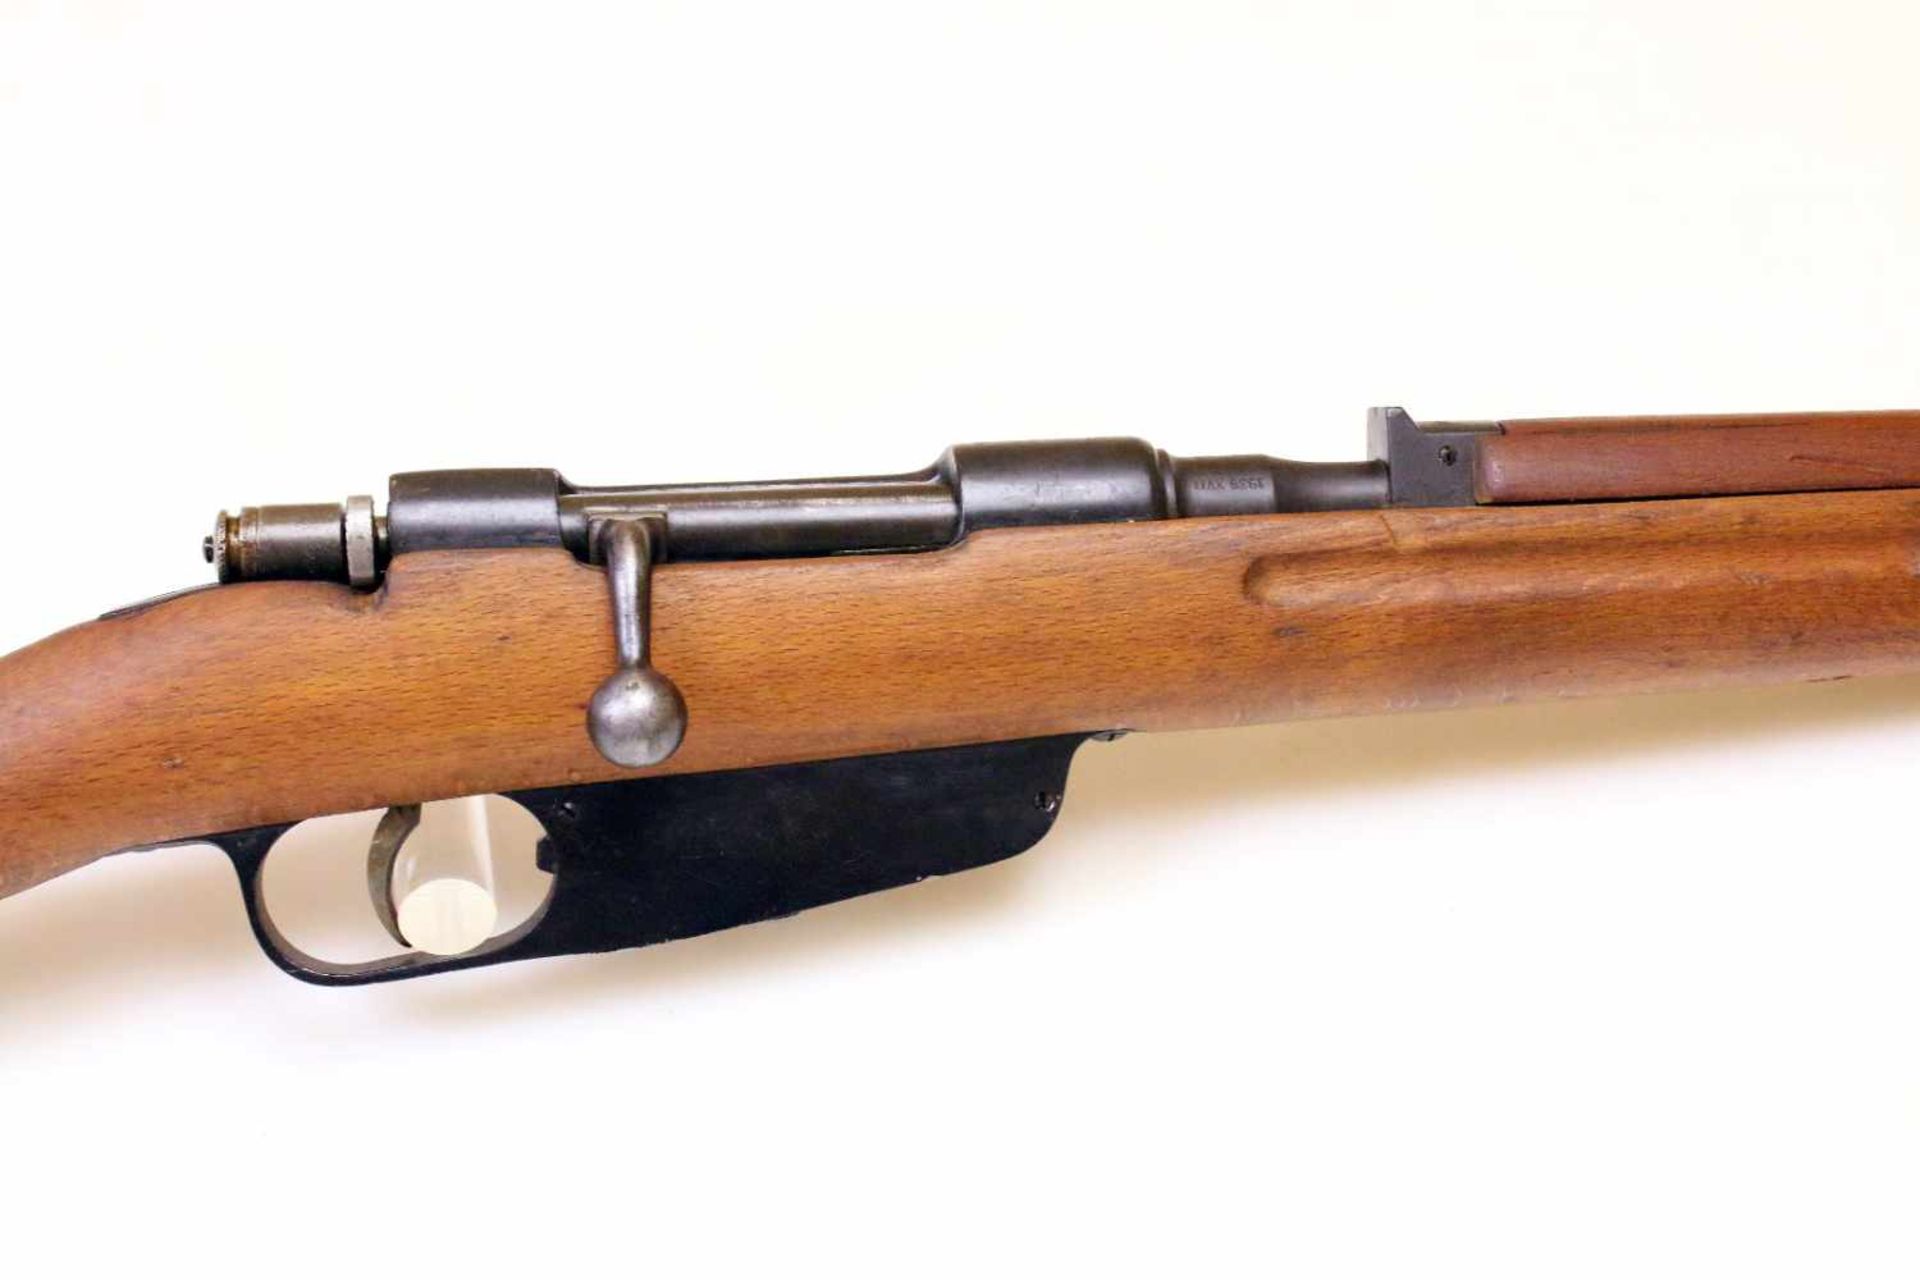 Karabiner Carcano M1938 Cal. 7,35mm carc., Lauf blank, Nr. Y871. Waffe gefertigt 1939 in Terni. - Bild 2 aus 12